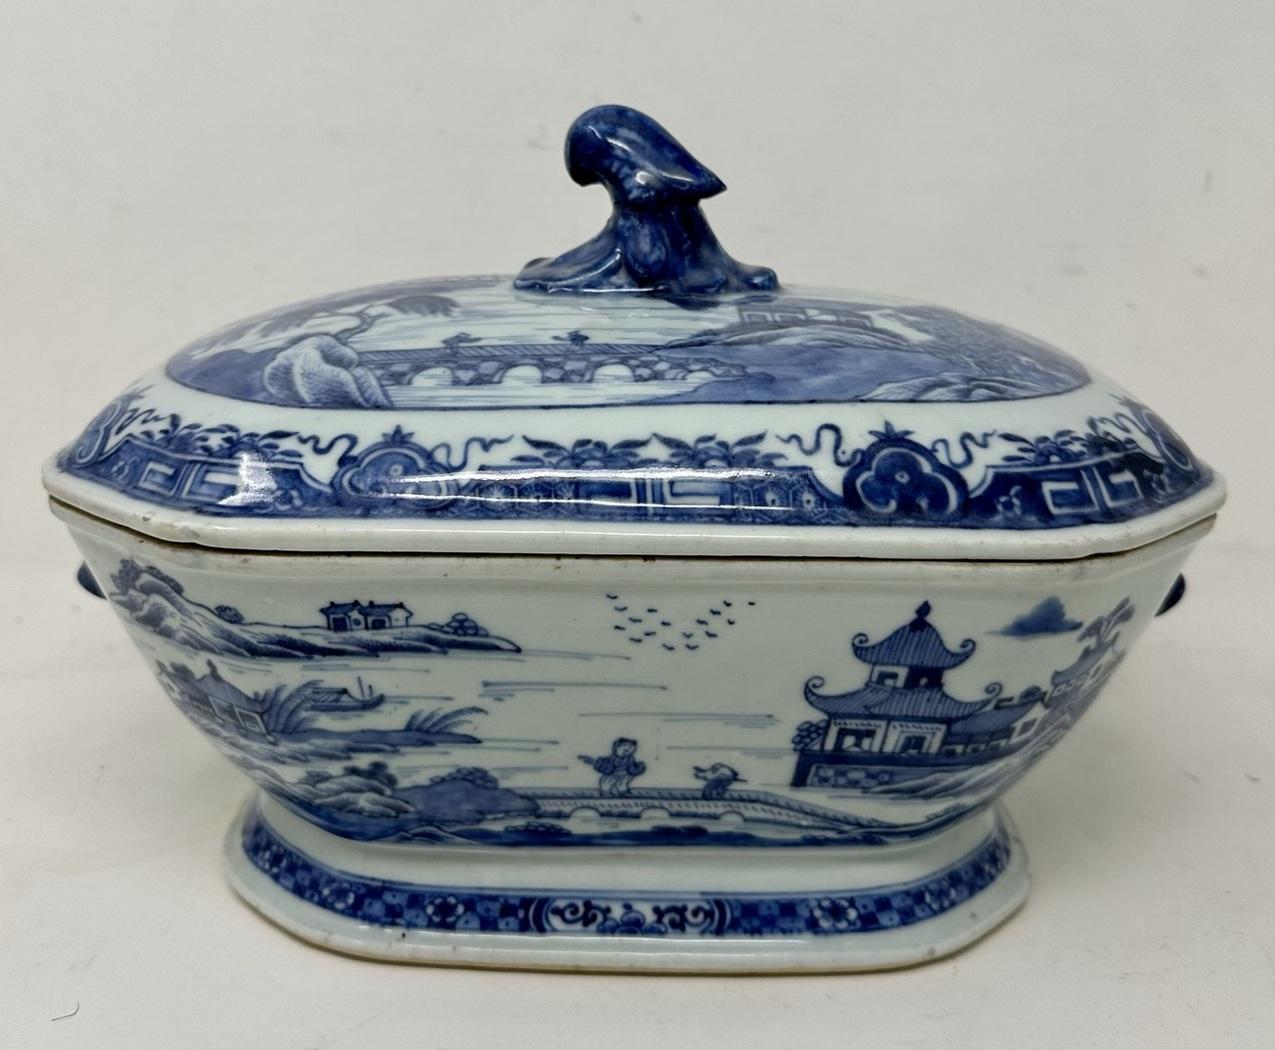 Très bel et rare exemple d'une soupière ou d'un plat profond à couvercle ovale en porcelaine d'exportation chinoise du XVIIIe siècle à double anse bleu et blanc, de proportions généreuses et de la période Chien Lung 1736-1795. 

Exquise décoration